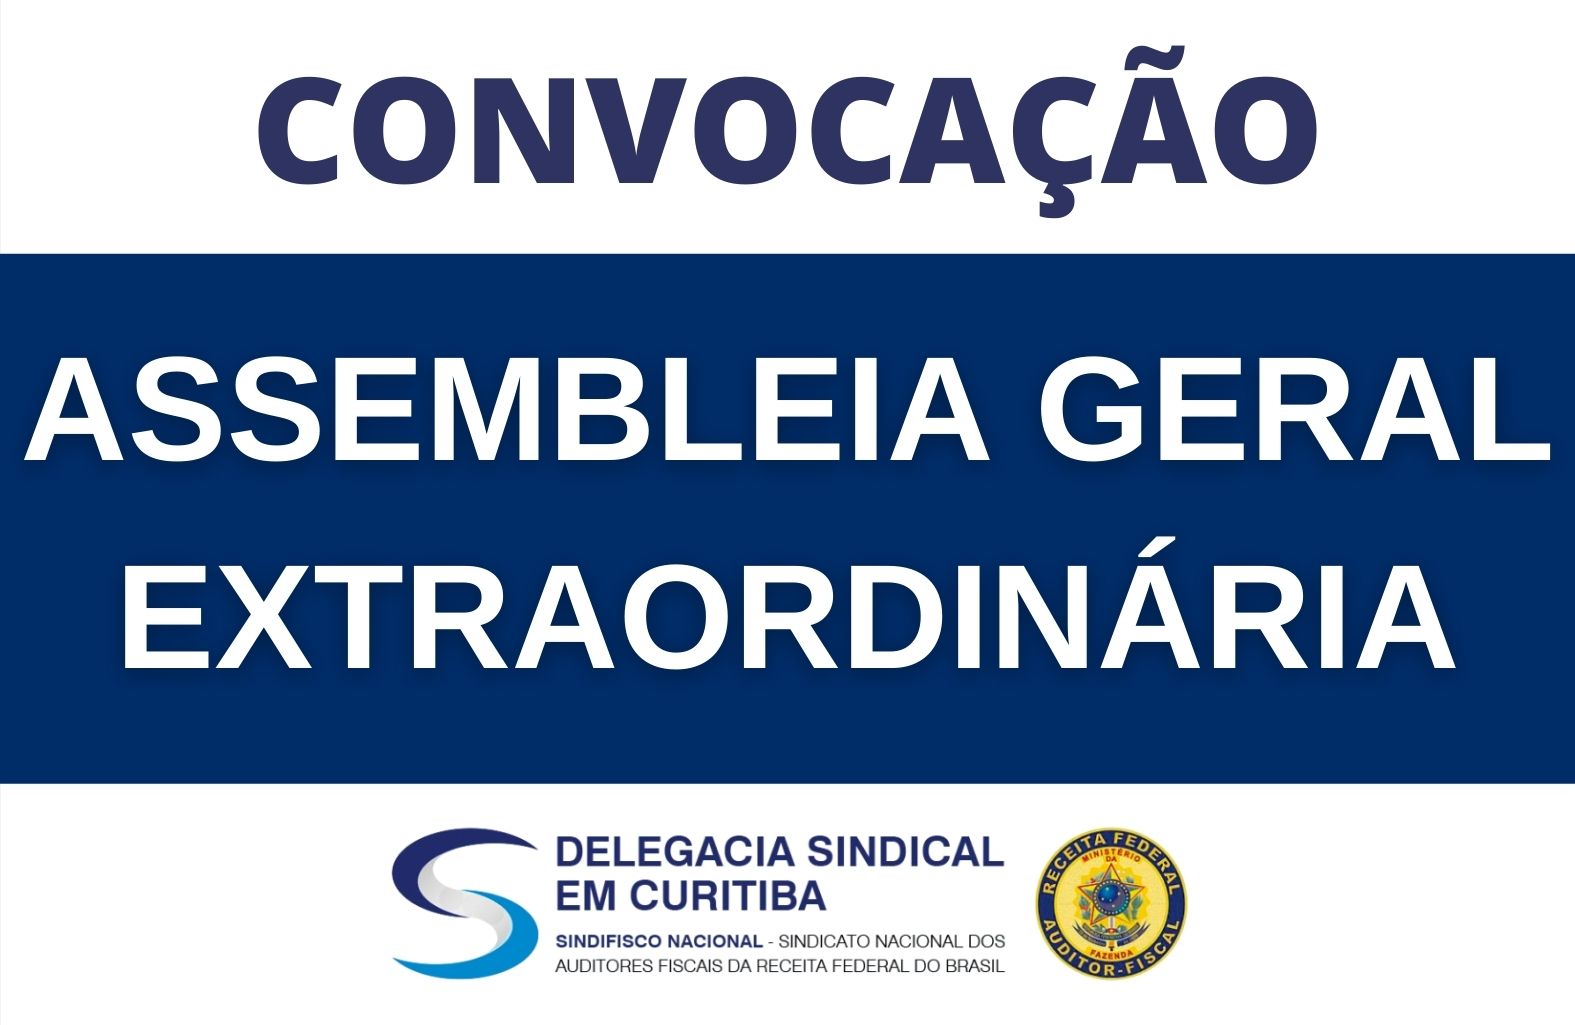 DS Curitiba convoca para Assembleia Geral Extraordinária no dia 2/7, às 14h